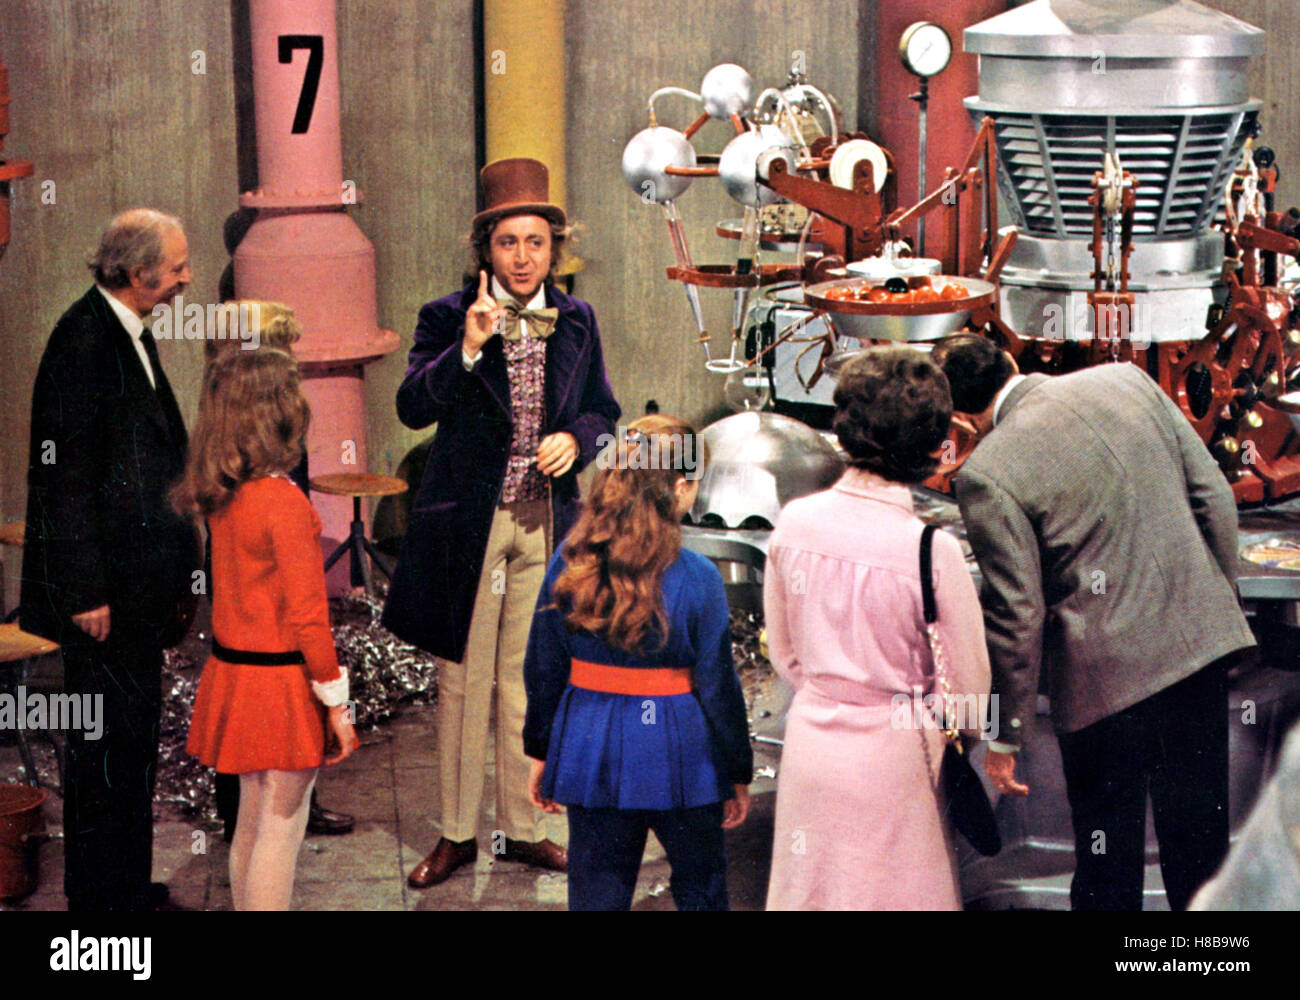 Willy Wonka und die Schokoladenfabrik, (WILLY WONKA AND THE CHOCOLATE FACTORY) USA 1971, Regie: Mel Stuart, GENE WILDER, Key: Zylinder, Fabrik, Besichtigung, Stock Photo